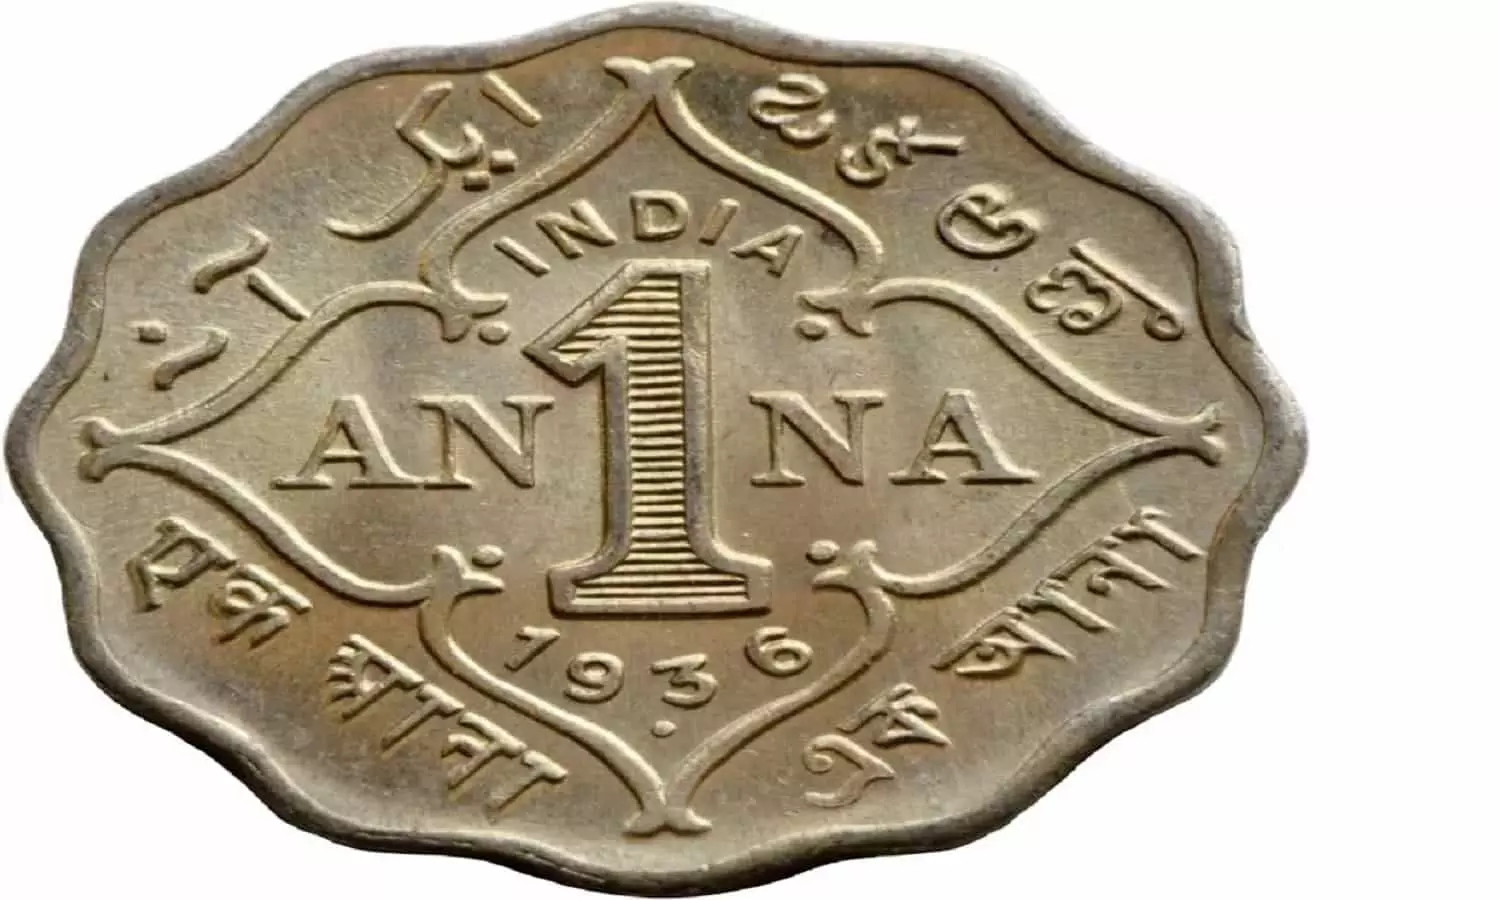 सन 1836 का 1 रूपये का पुराना सिक्का घर बैठे बना देगा 10 करोड़ का मालिक, सिक्का बेचने के लिए निचे दिए नंबर पर कॉल करे